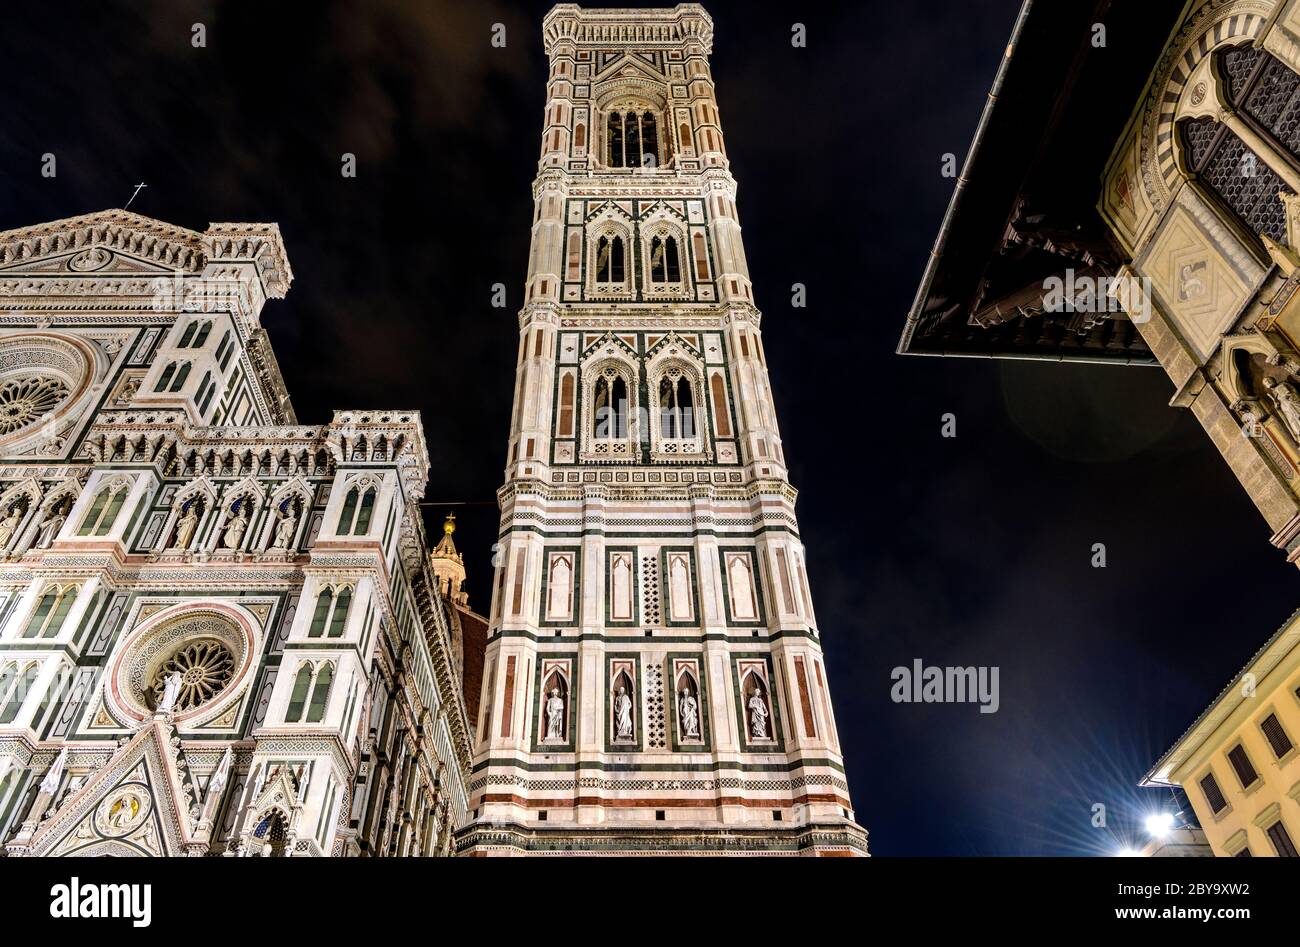 Campanile de Giotto la nuit - VUE nocturne à angle bas du Campanile de Giotto de la cathédrale de Florence. Florence, Toscane, Italie. Banque D'Images